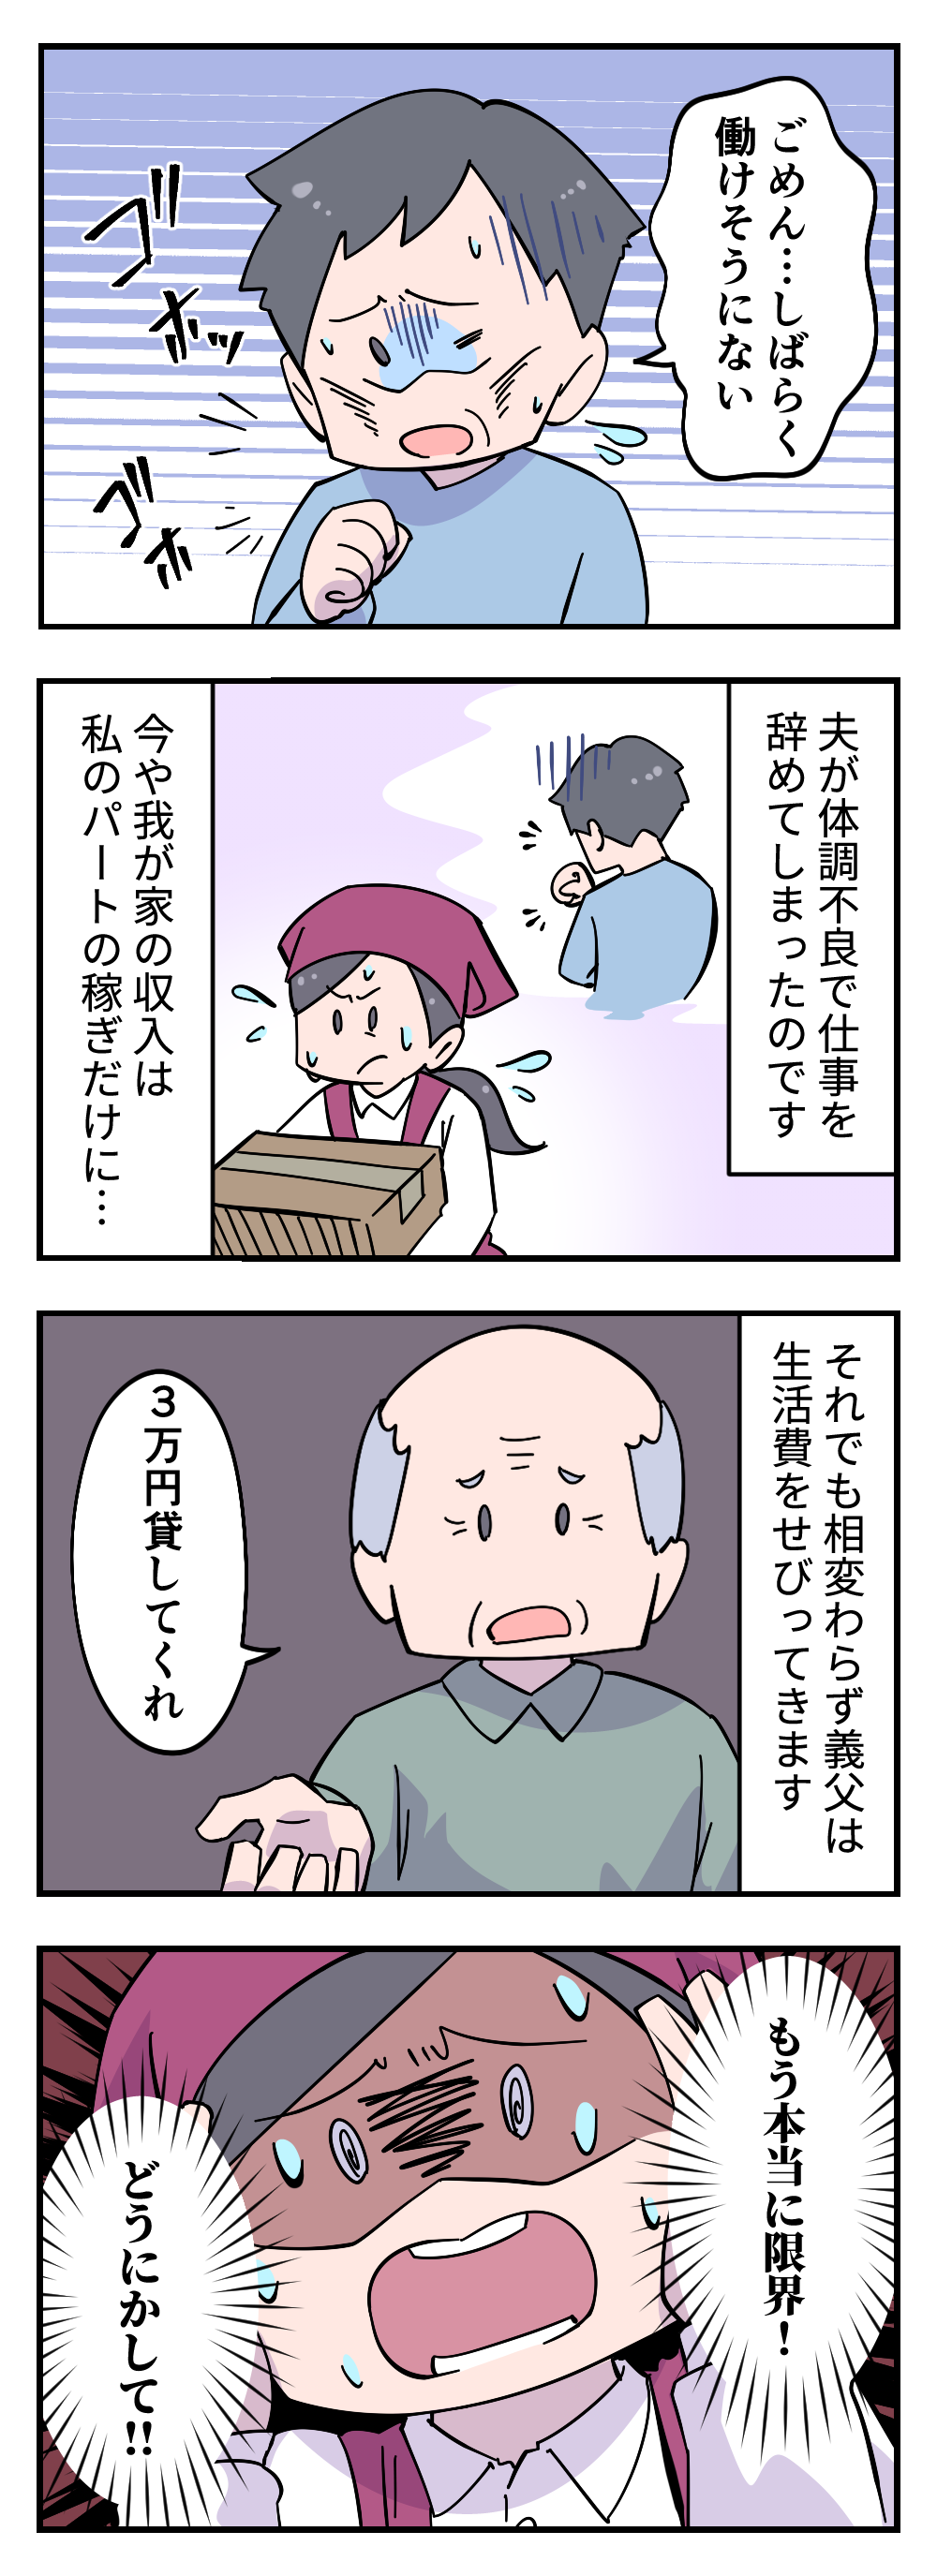 【漫画】「3万円貸してくれ」無職の夫とパートの私。そんな我が家に生活費をせがむ義父＜後編＞ 412_003.png